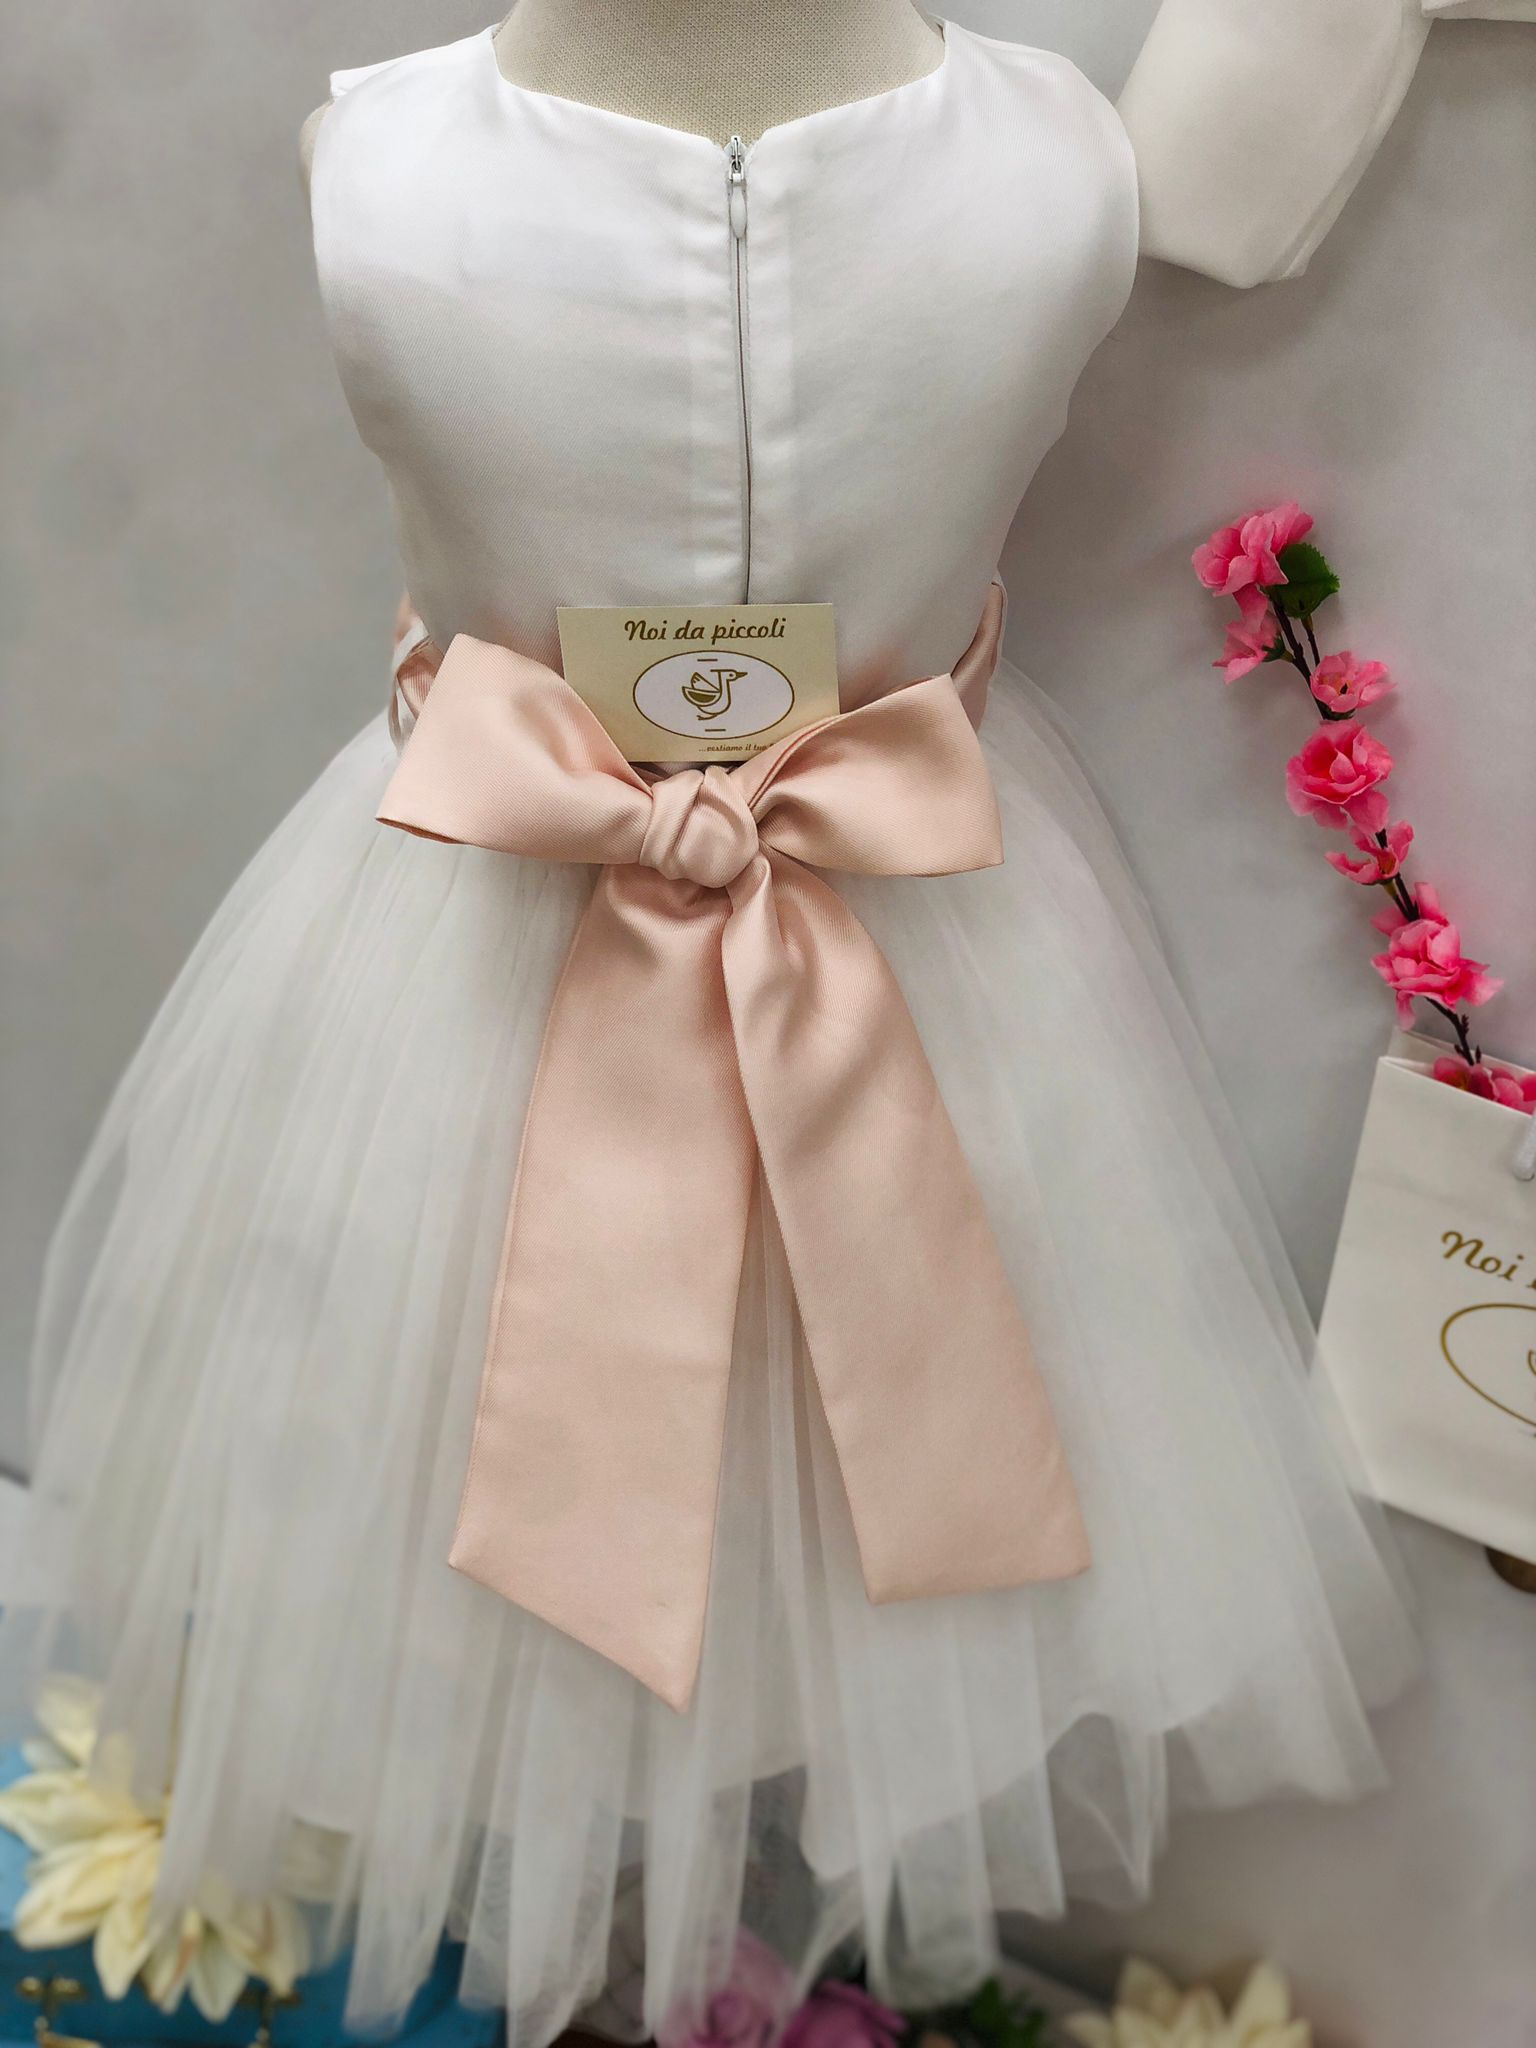 ELEGANT WHITE DRESS WITH HEADBAND FULL OF ROSES